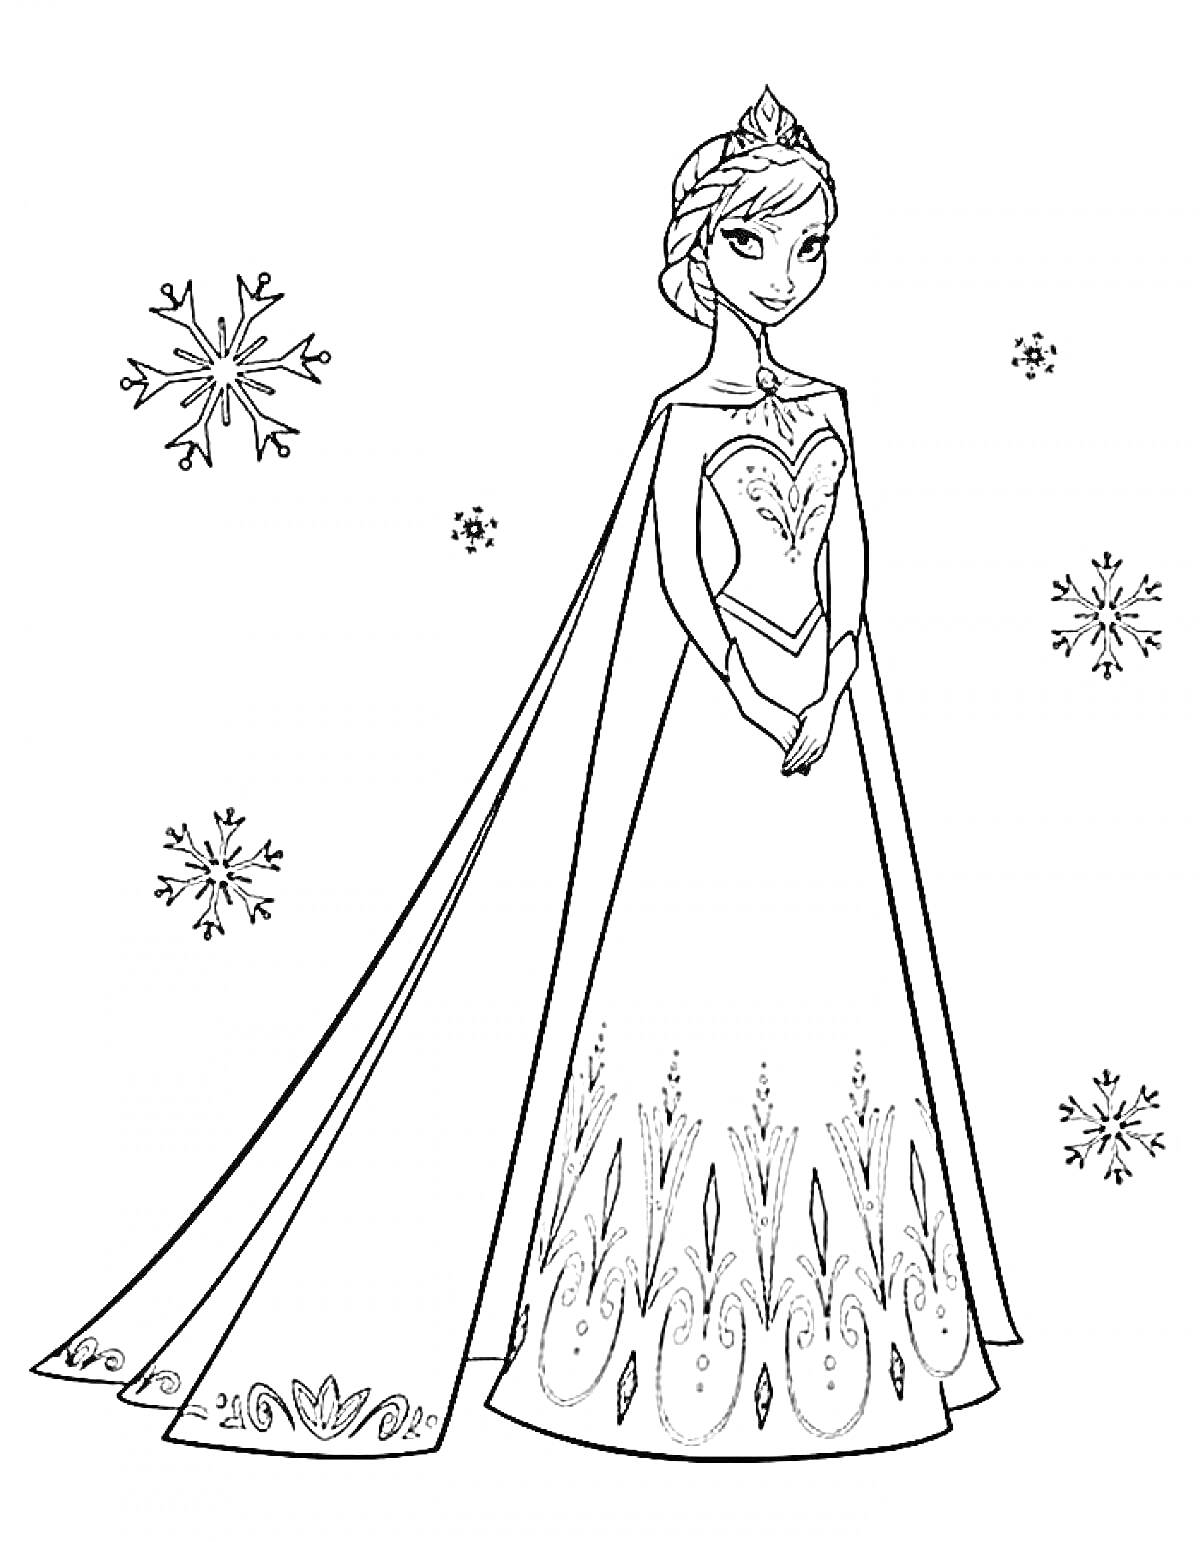 Эльза в платье с узорами и снежинками вокруг